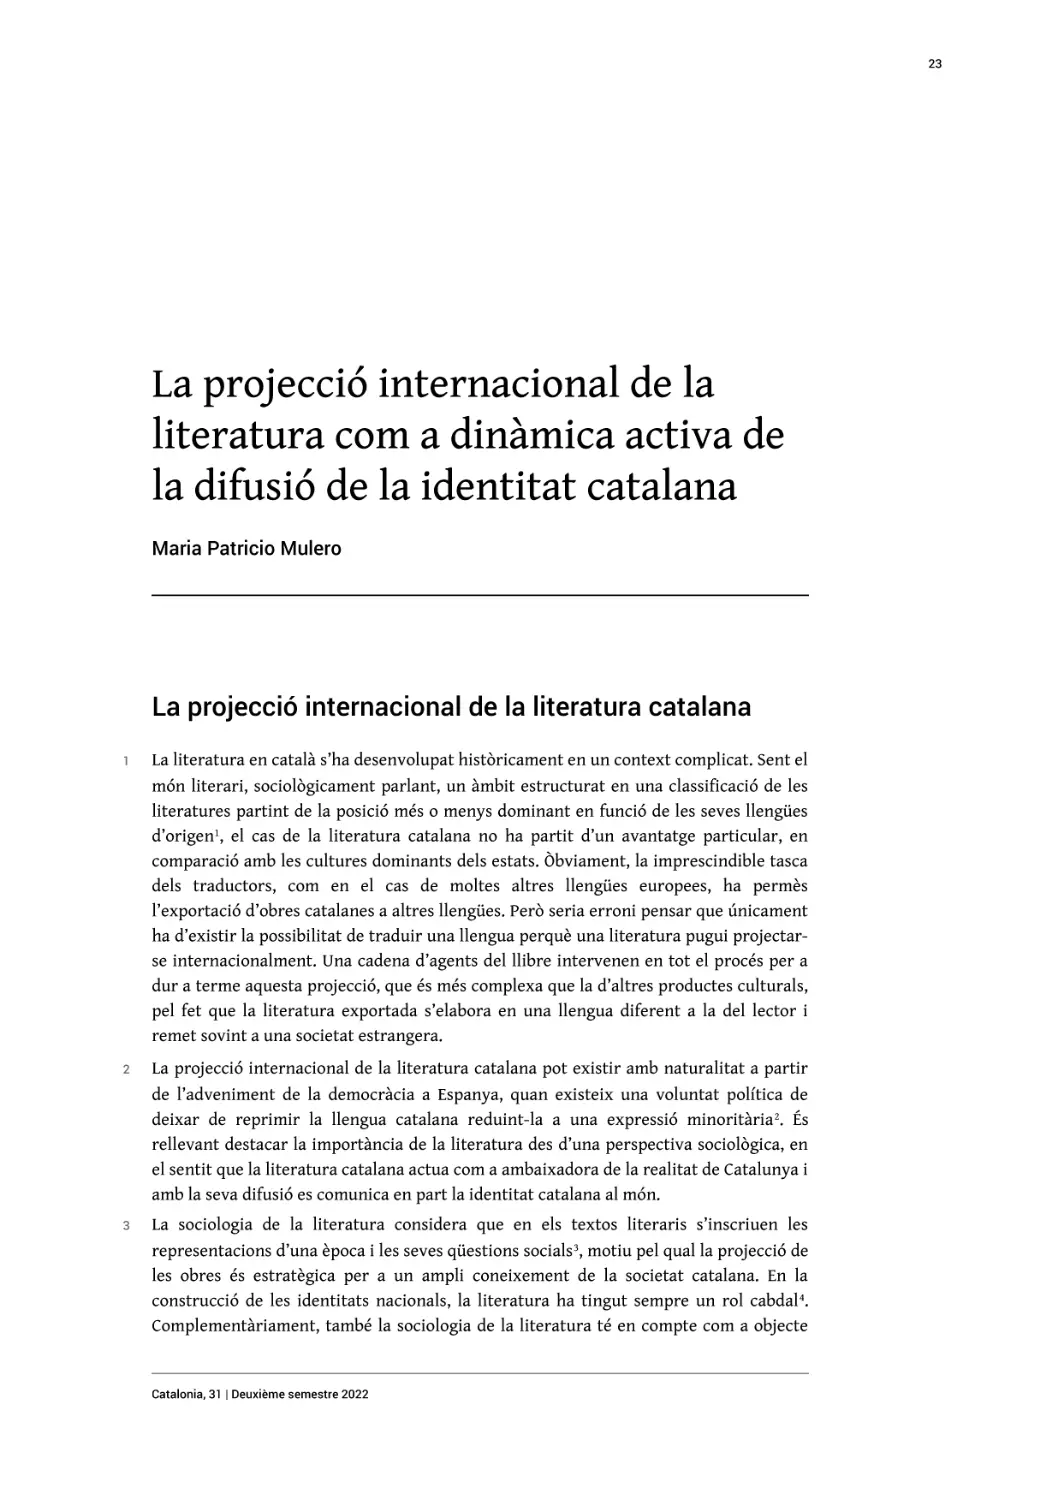 La projecció internacional de la literatura com a dinàmica activa de la difusió de la identitat catalana